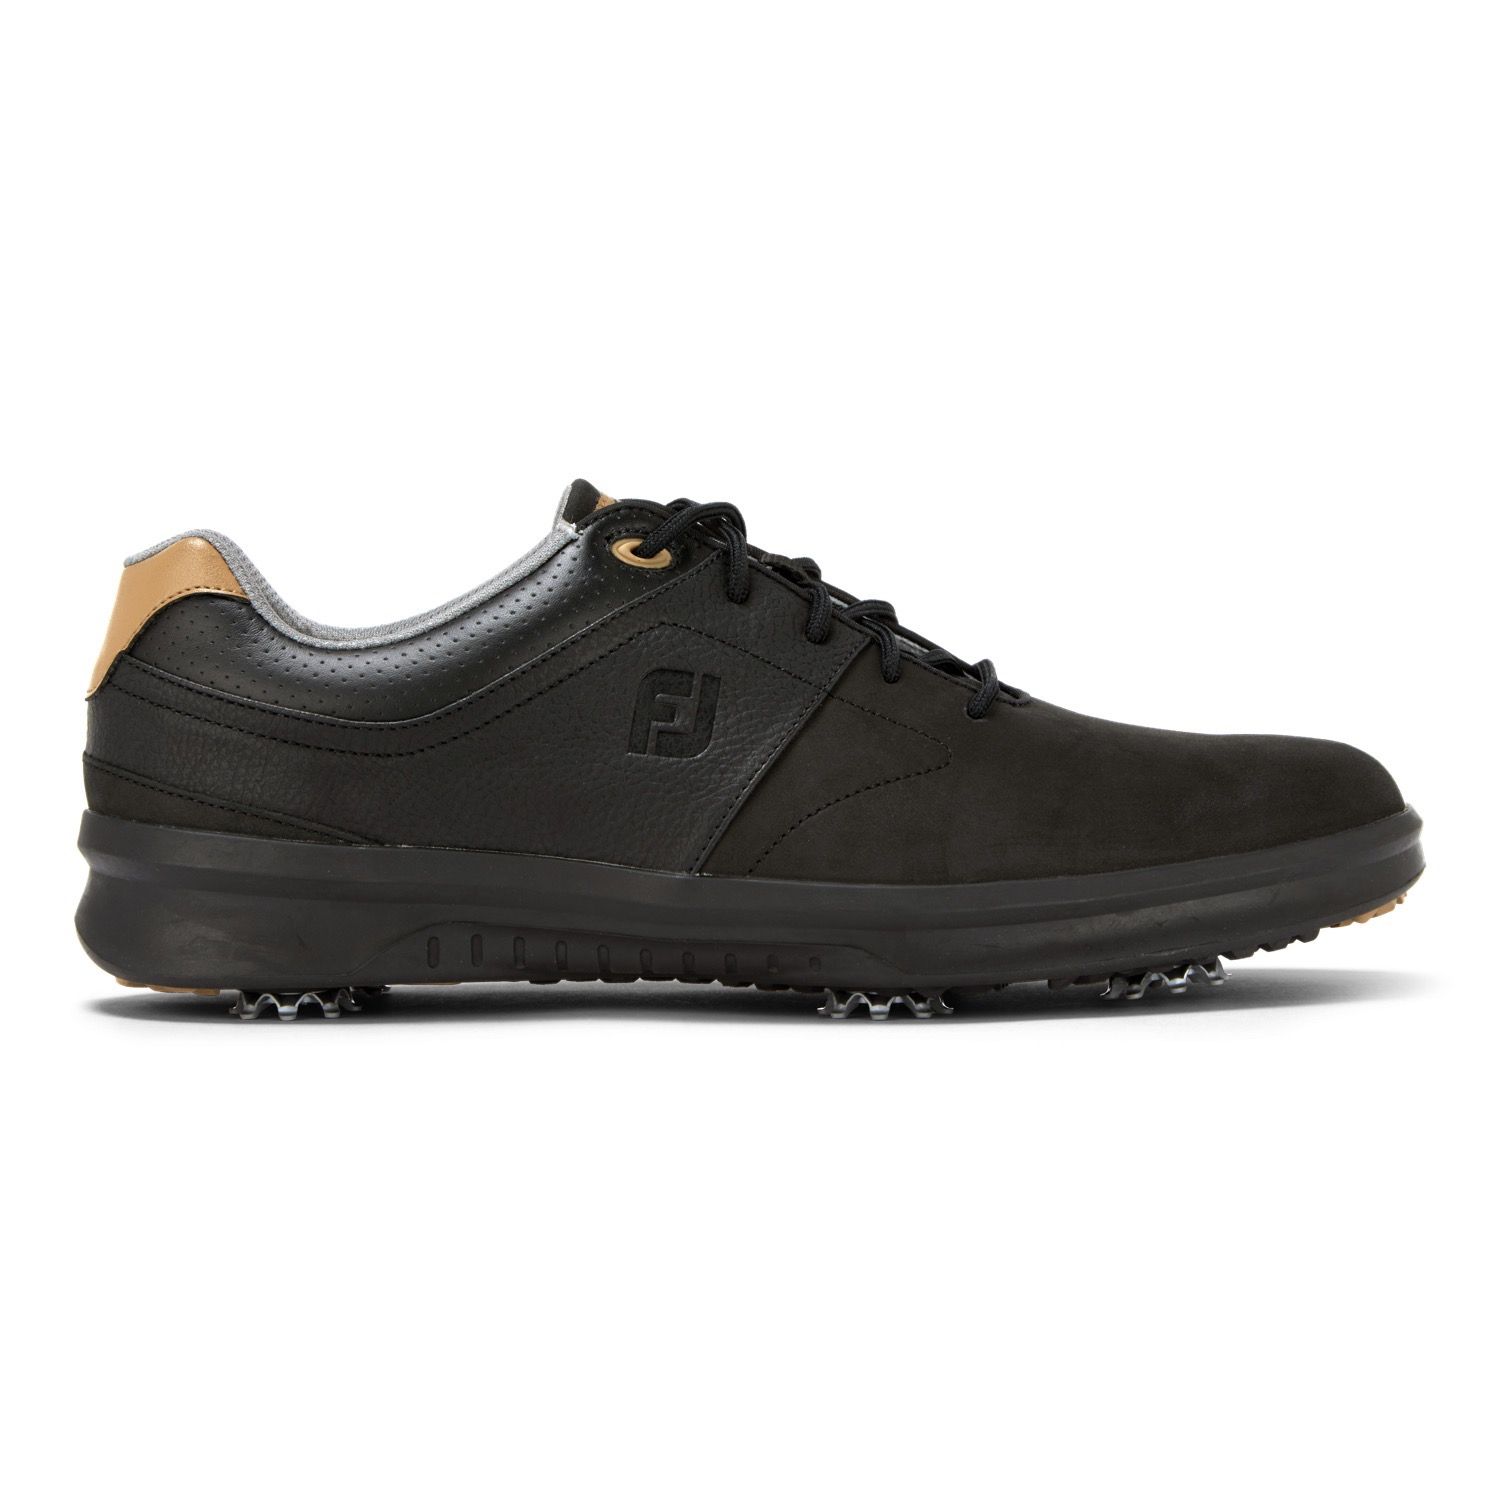 footjoy contour golf shoes 2016 for sale